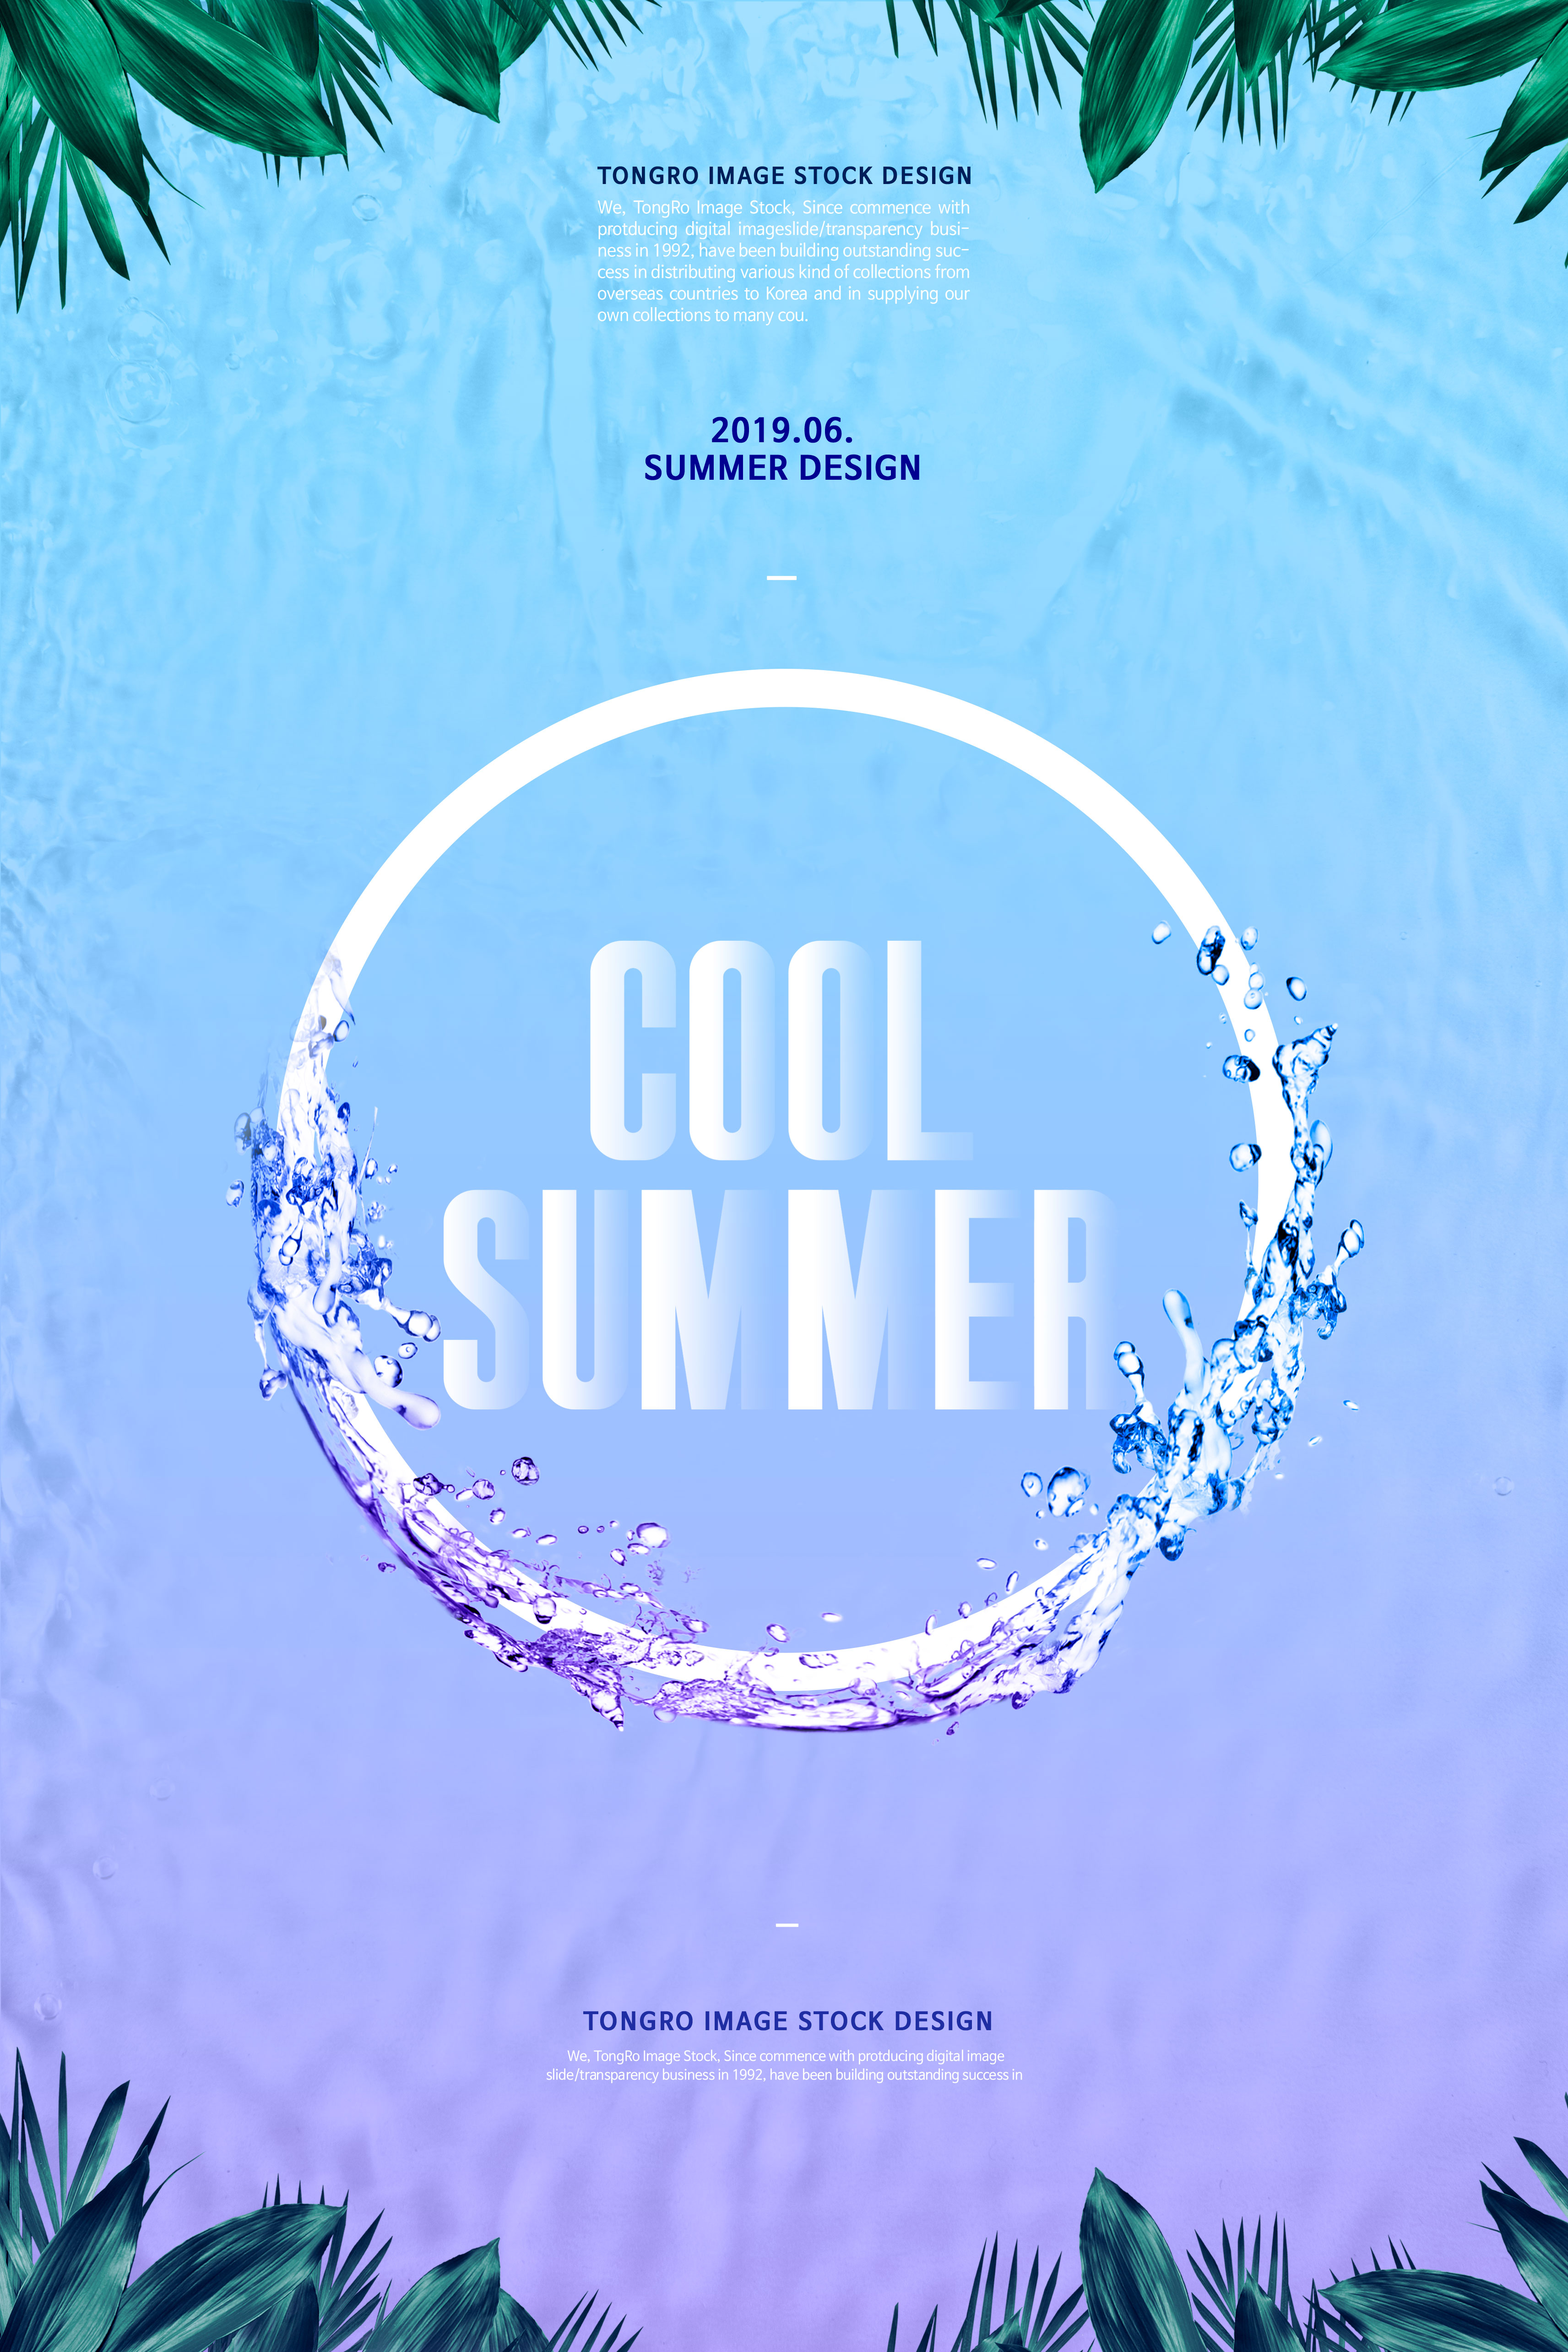 夏季酷暑清爽活动宣传广告海报设计套装插图(6)